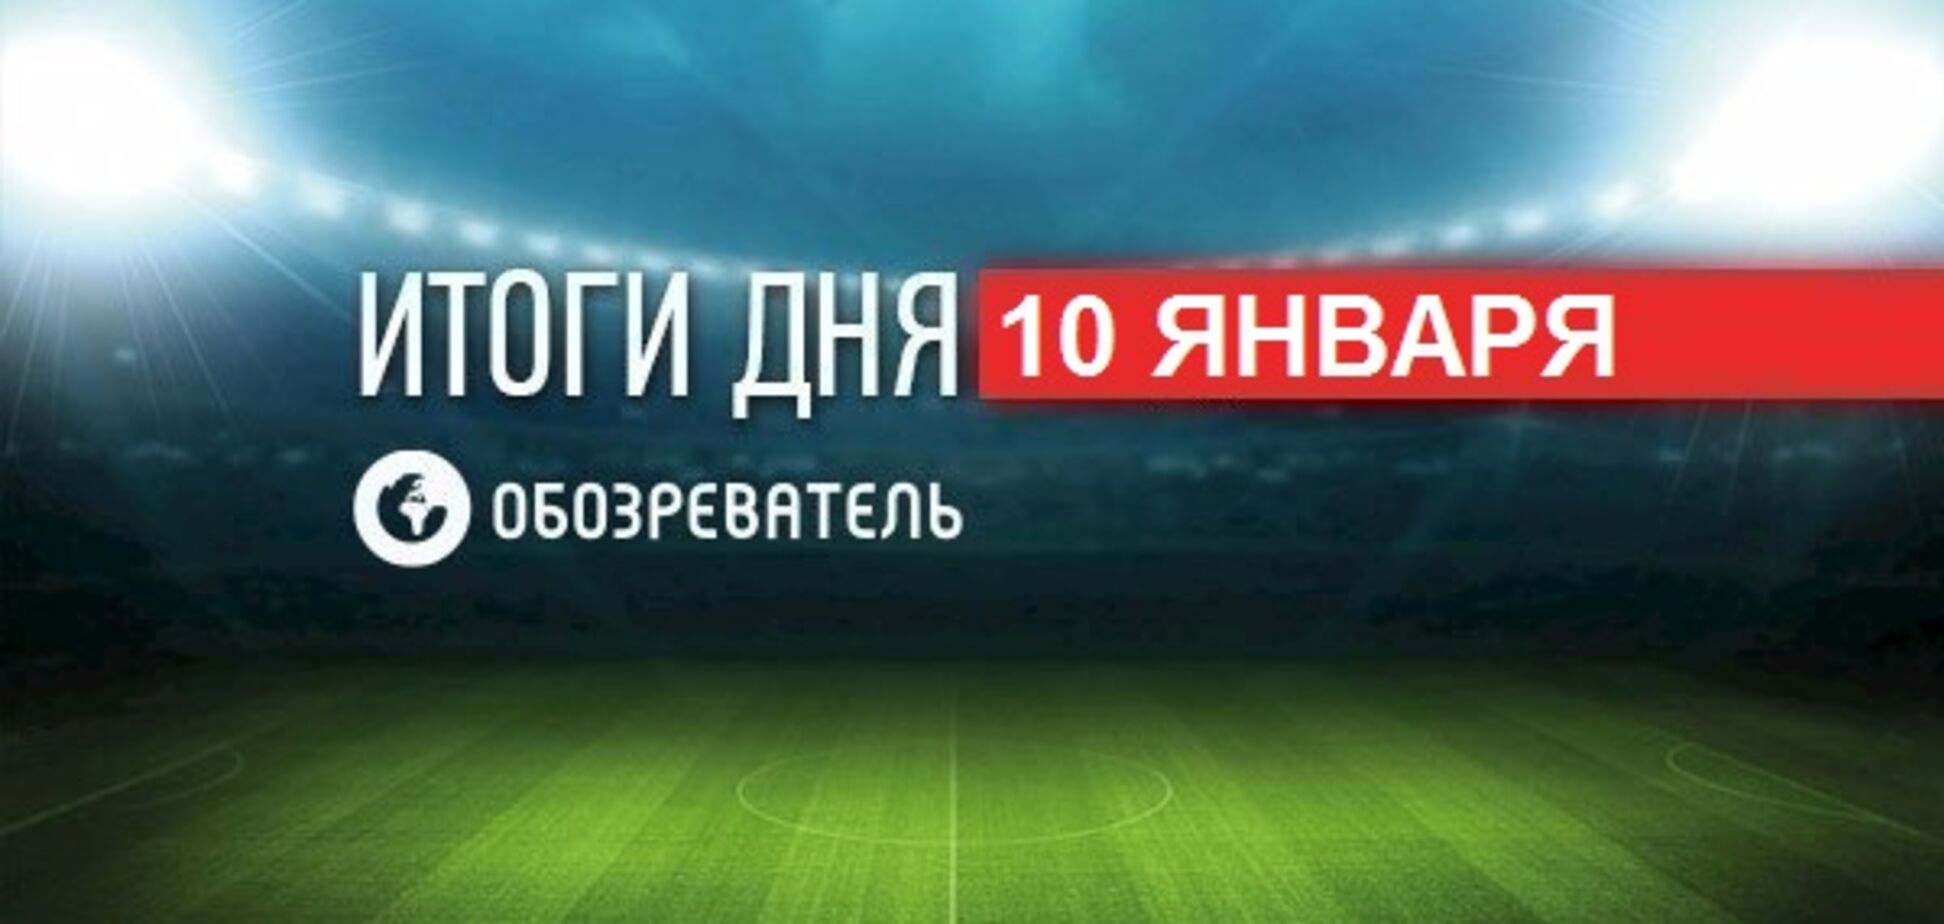 СМИ сообщили об уникальном трансфере 'Динамо': спортивные итоги 10 января